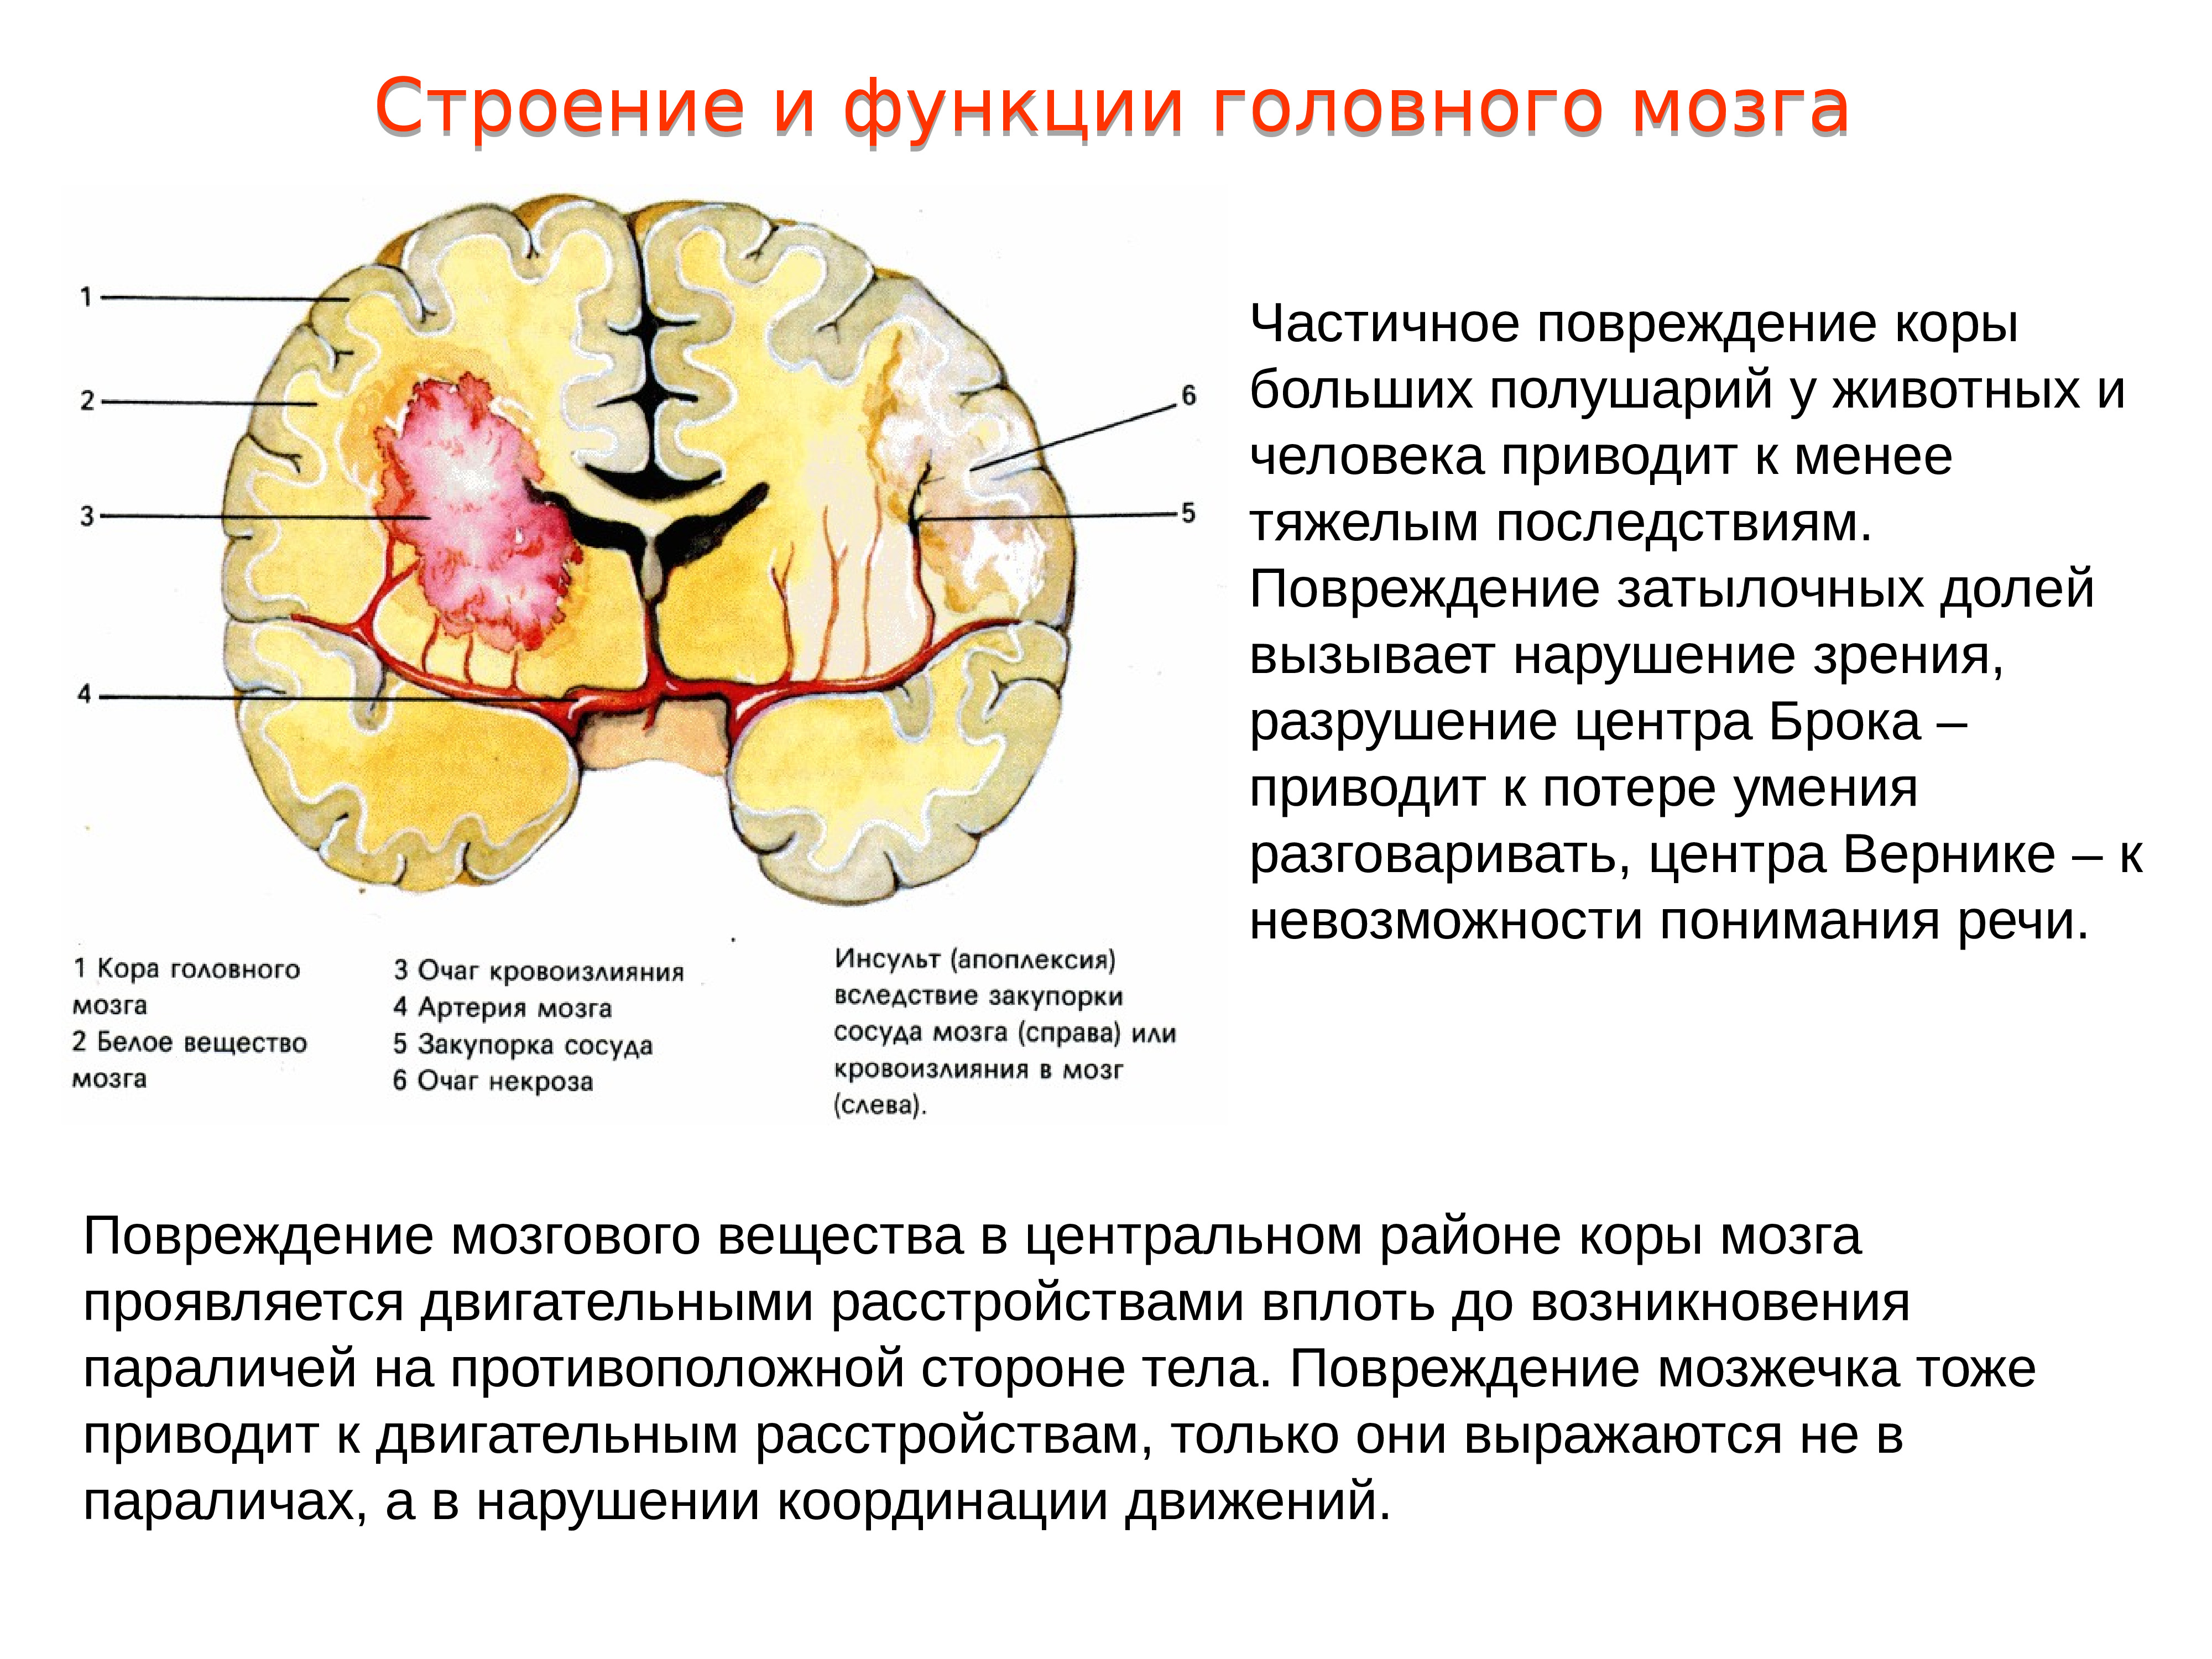 Нарушение коры полушарий. Повреждение головного мозга. Повреждения затылочной доли мозга. Нарушение коры головного мозга. Нарушение функций коры мозга..